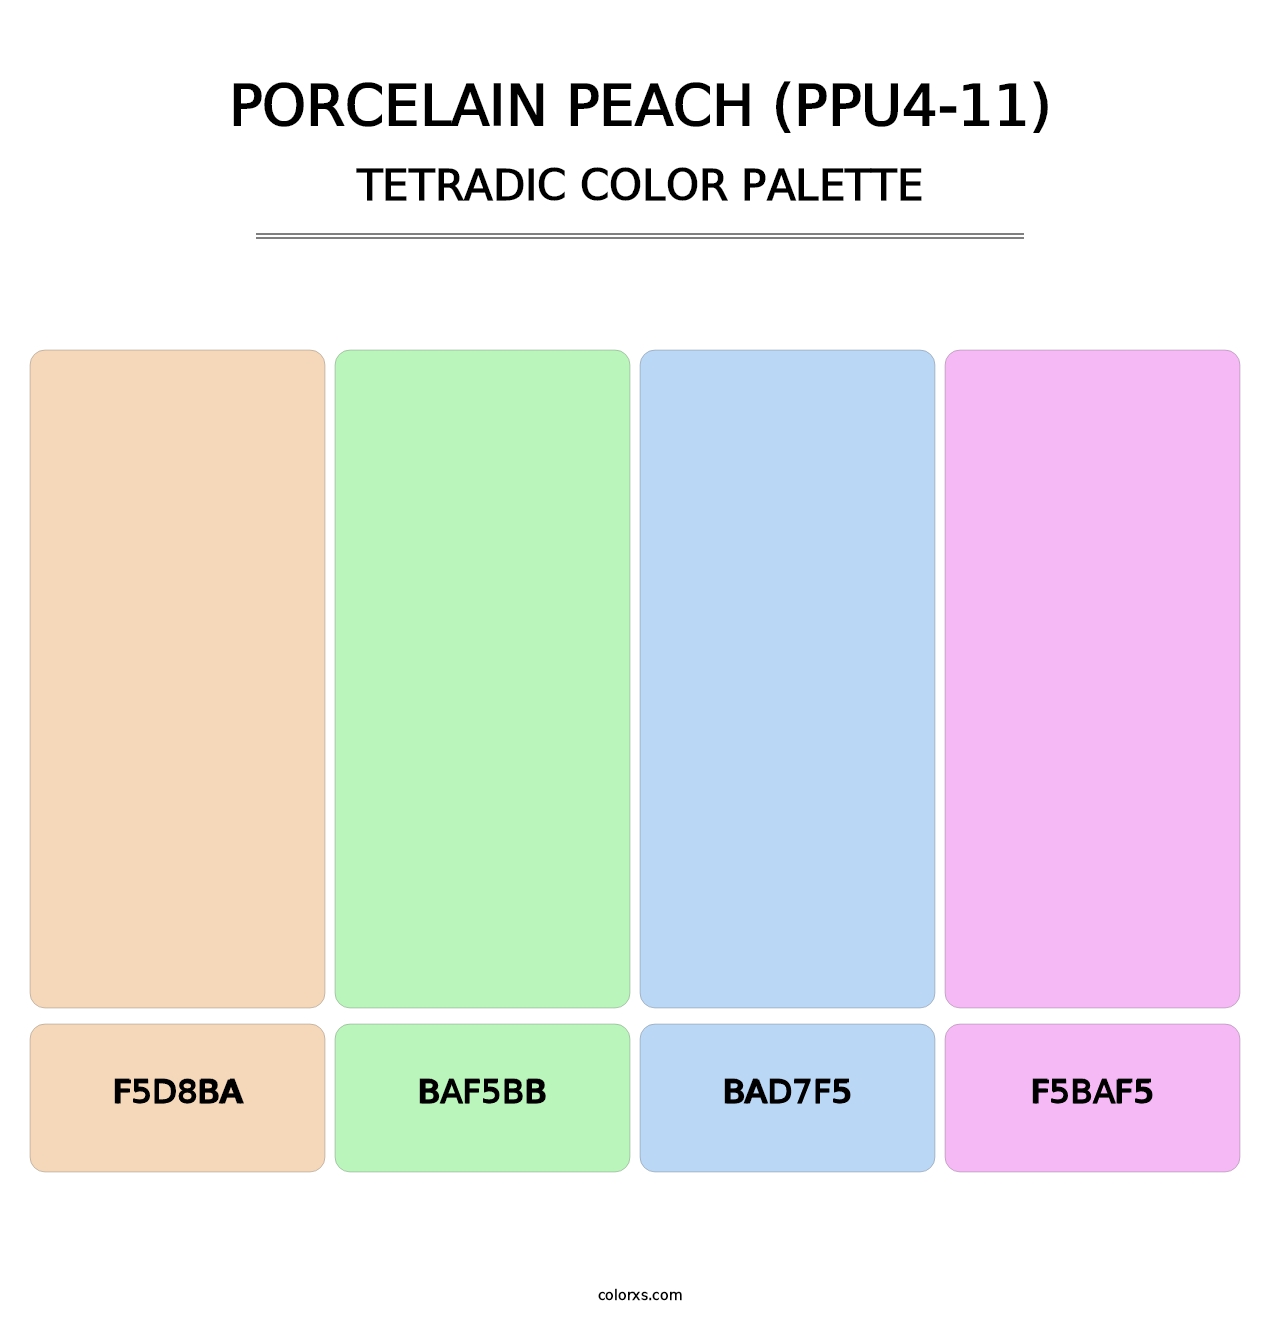 Porcelain Peach (PPU4-11) - Tetradic Color Palette